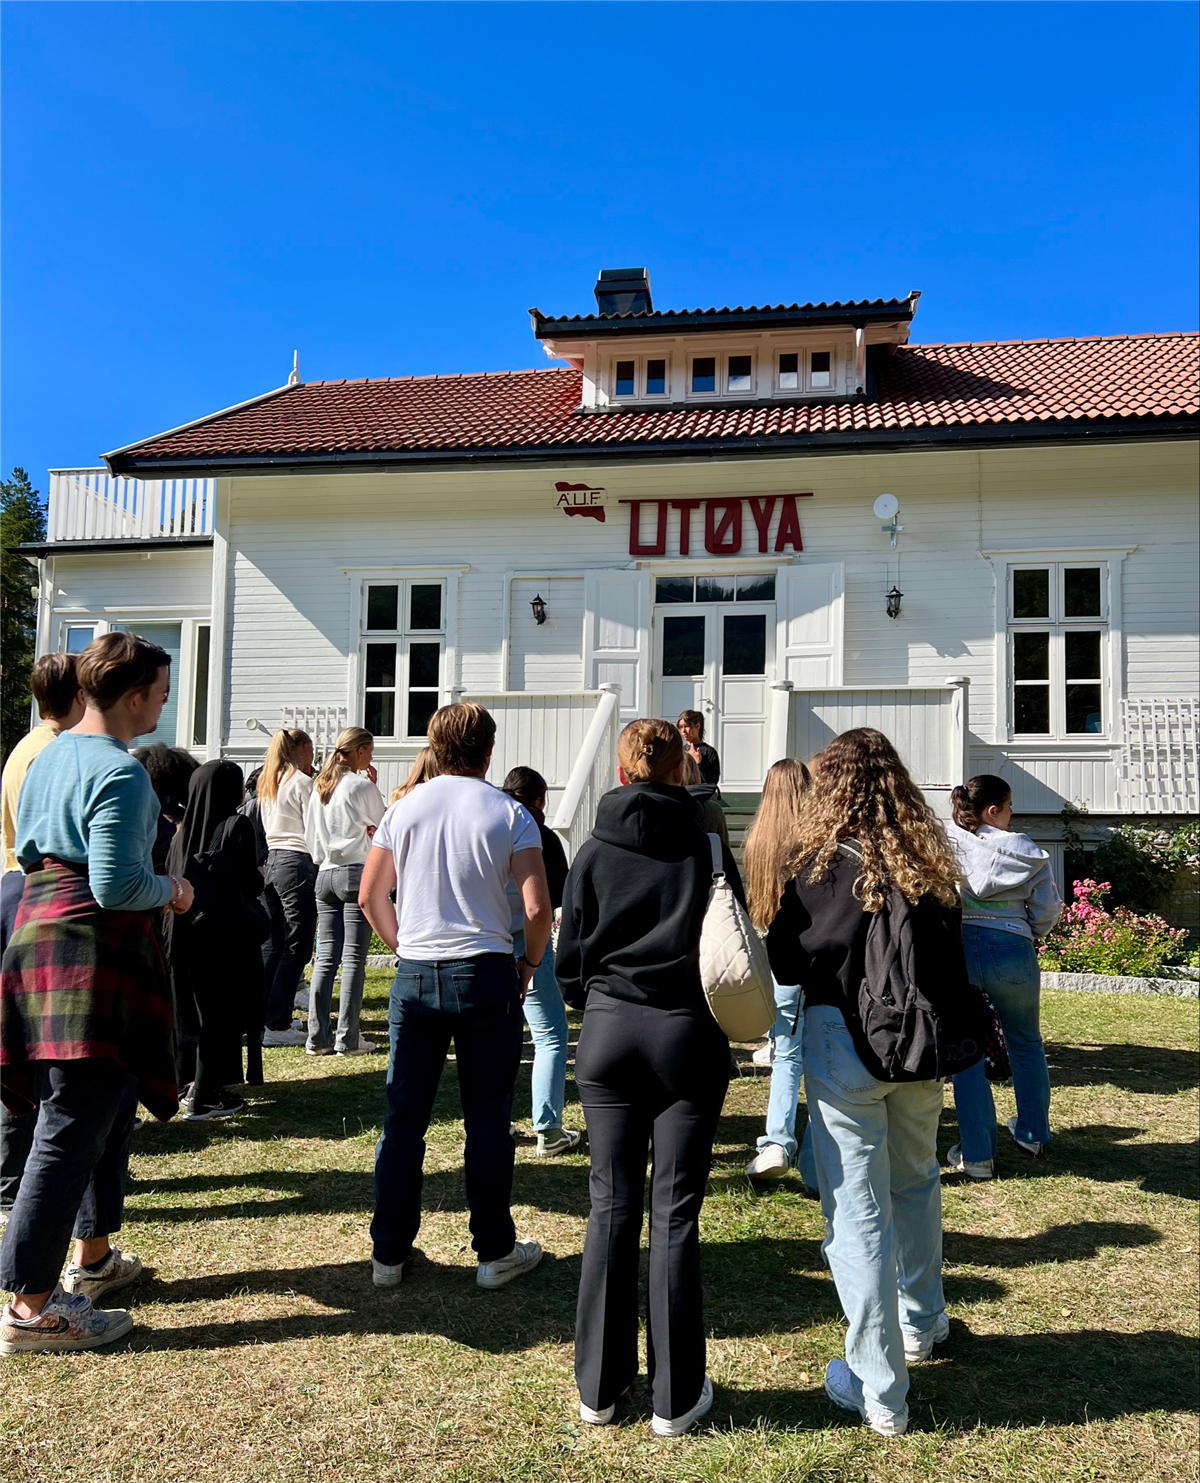 Det er blå himmel og en gruppe elever står med ryggen til fotografen på en gressplen og hører på en dame som snakker.  De står foran et hus med skriften "AUF Utøya" over inngangsdøren. - Klikk for stort bilde